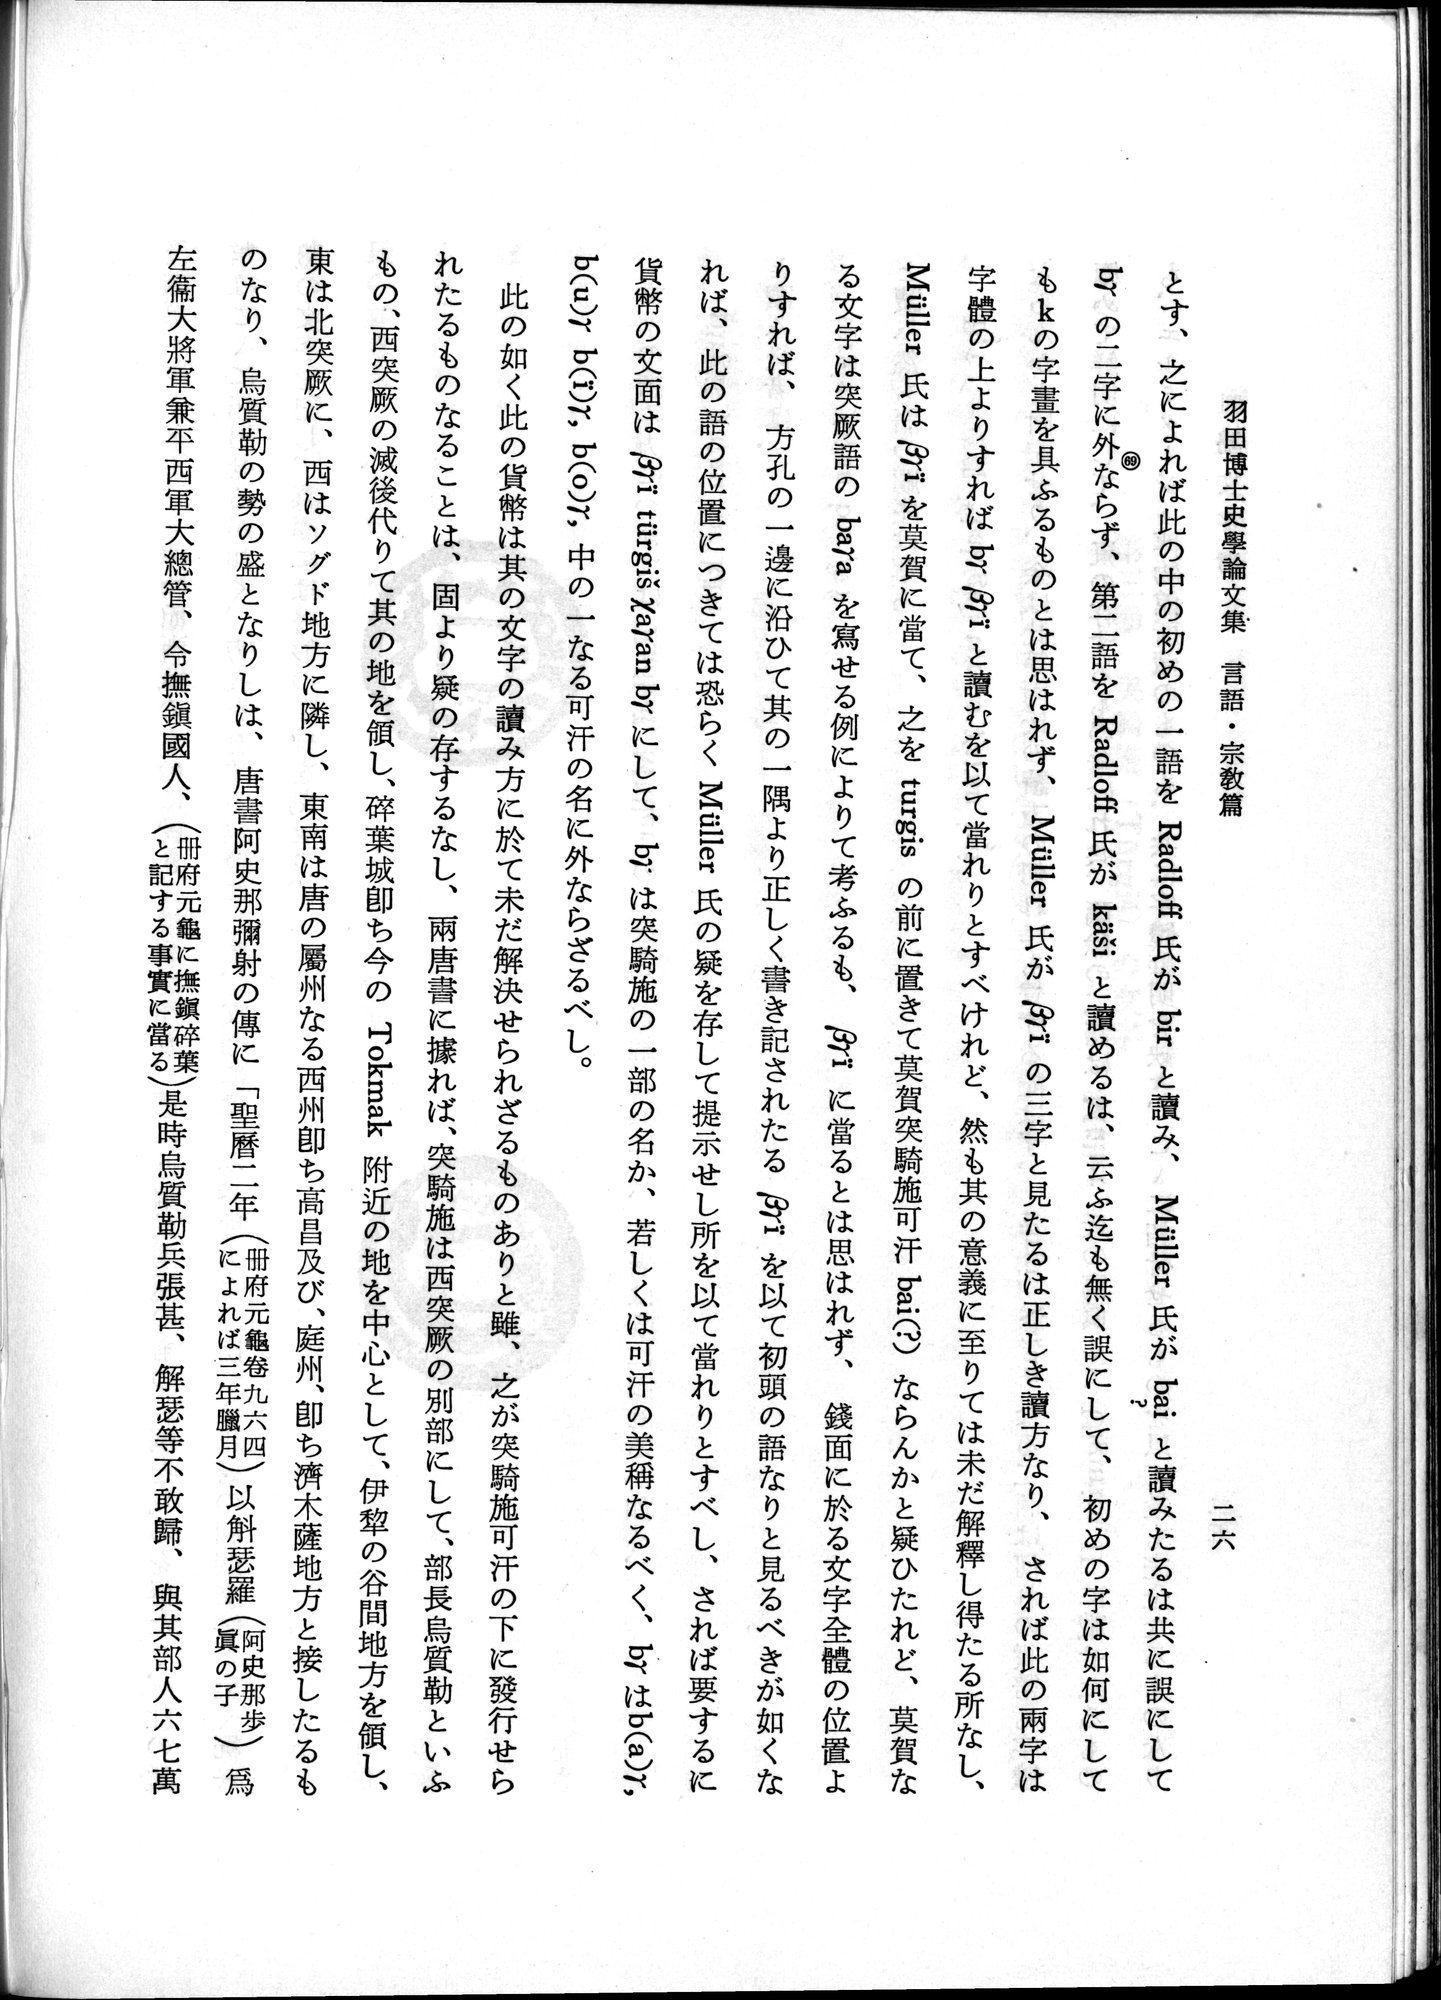 羽田博士史学論文集 : vol.2 / Page 76 (Grayscale High Resolution Image)